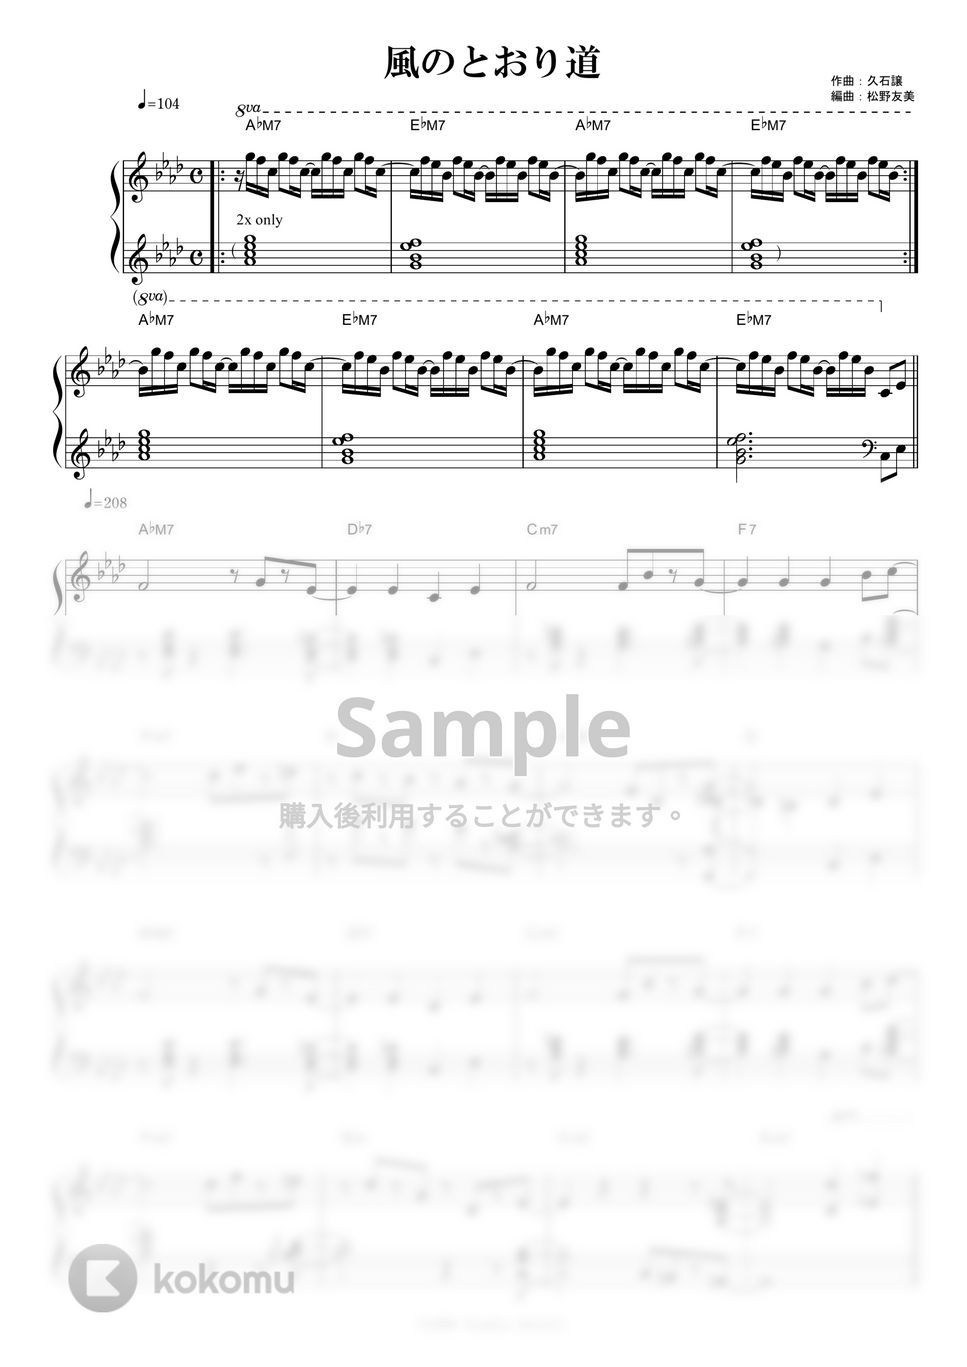 久石譲 - 風の通り道 (Jazz ver.) by piano*score